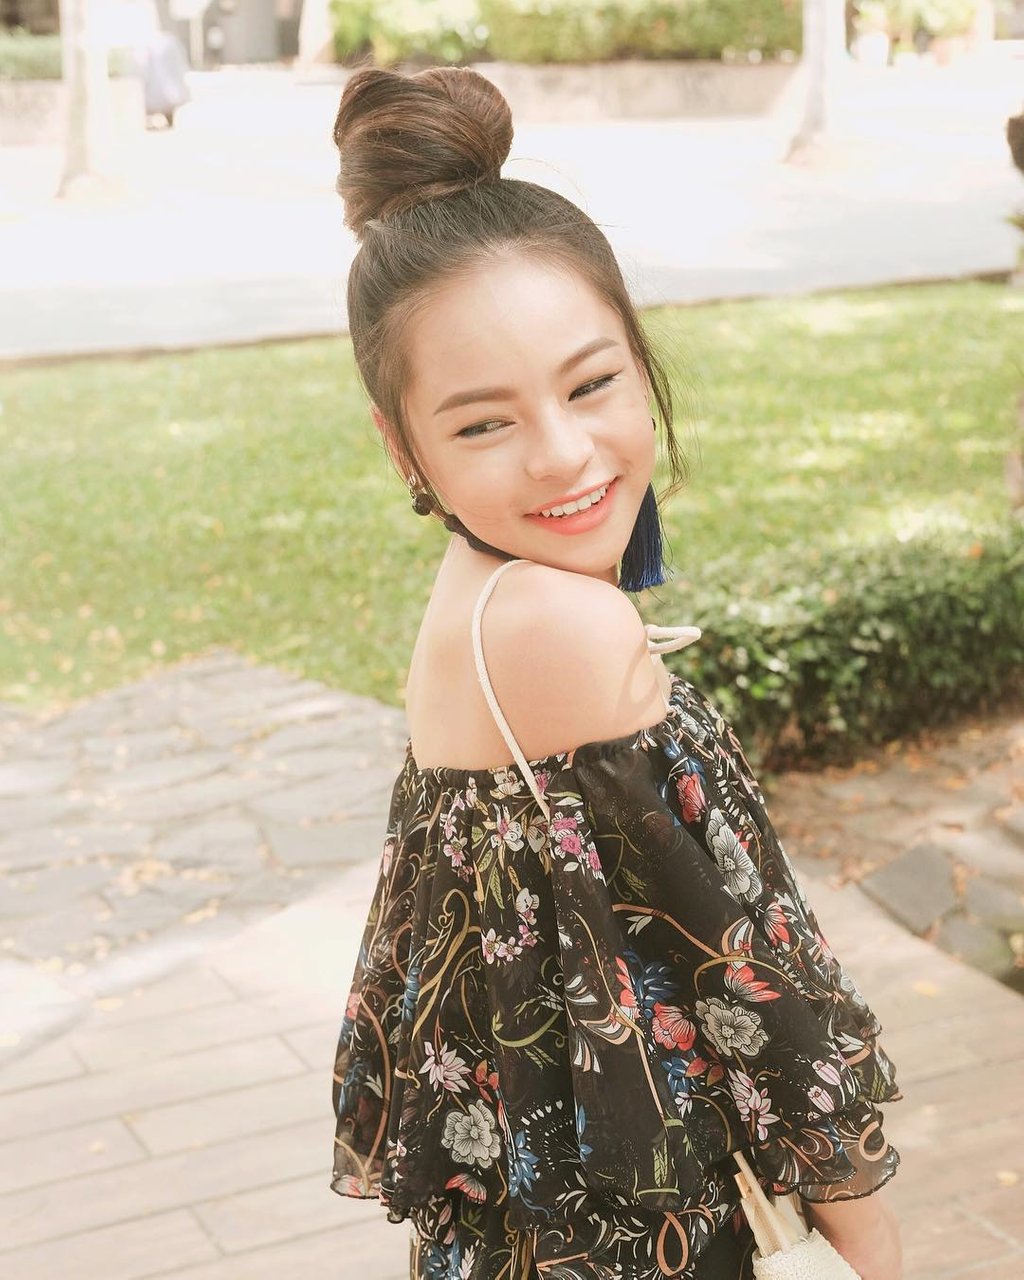 Không thể tin được, đây là sắc vóc và phong cách thời trang của cô nàng mới 14 tuổi. Có thể thấy Sunny Dương phổng phao hơn hẳn tuổi 14 của mình.